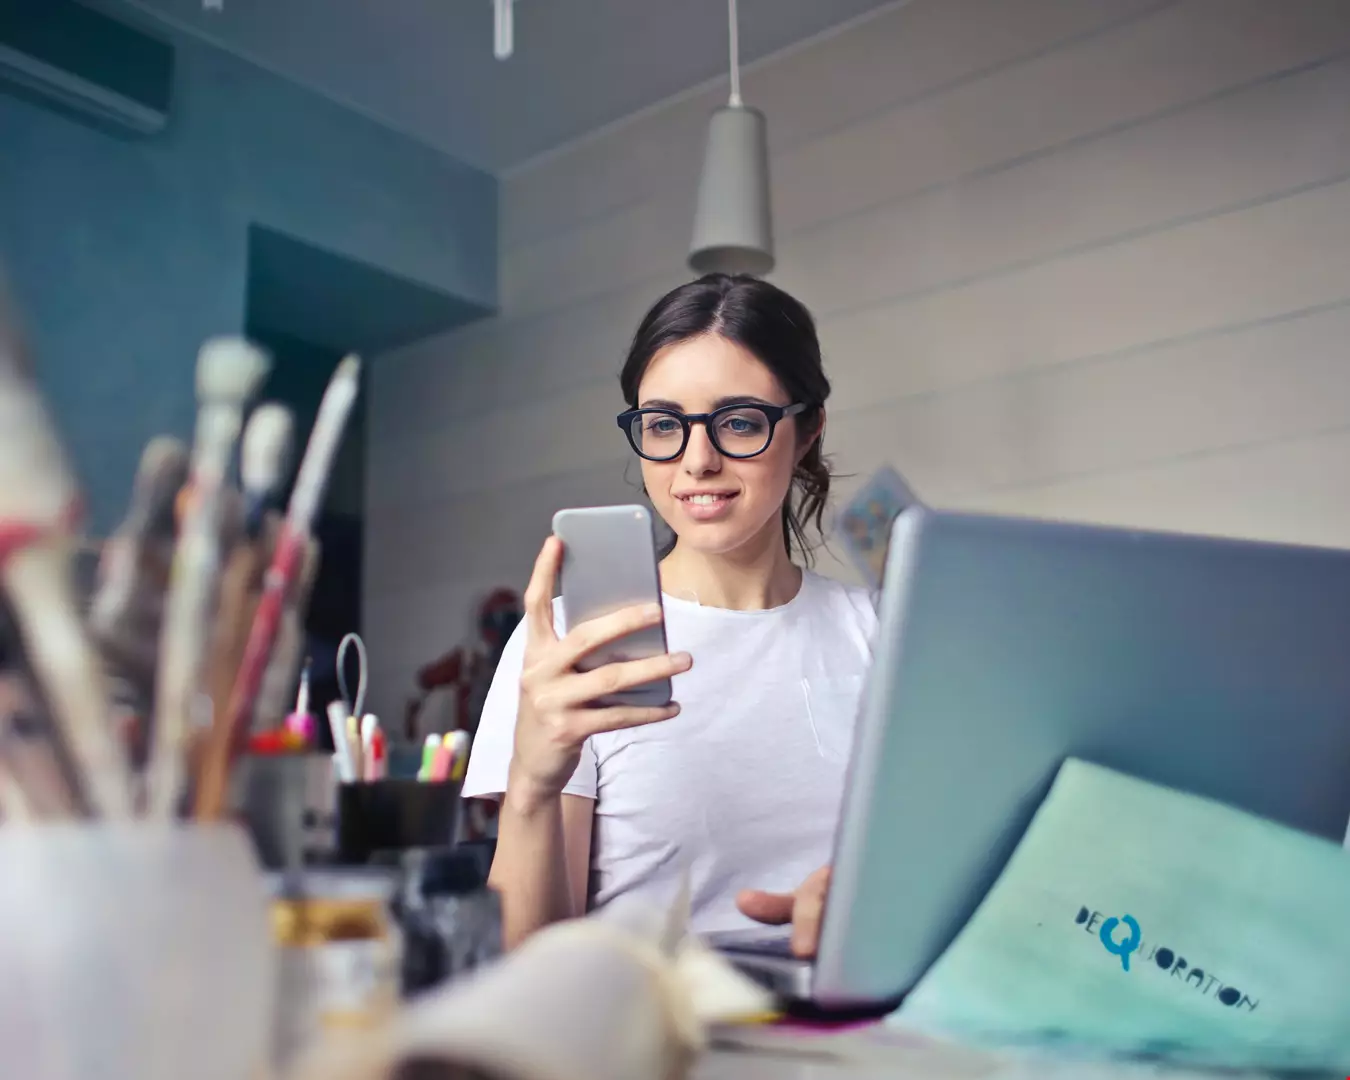 Ung kvinna jobbar framför datorn, sitter med mobilen i handen, kvinnan har glasögon med svart båge.